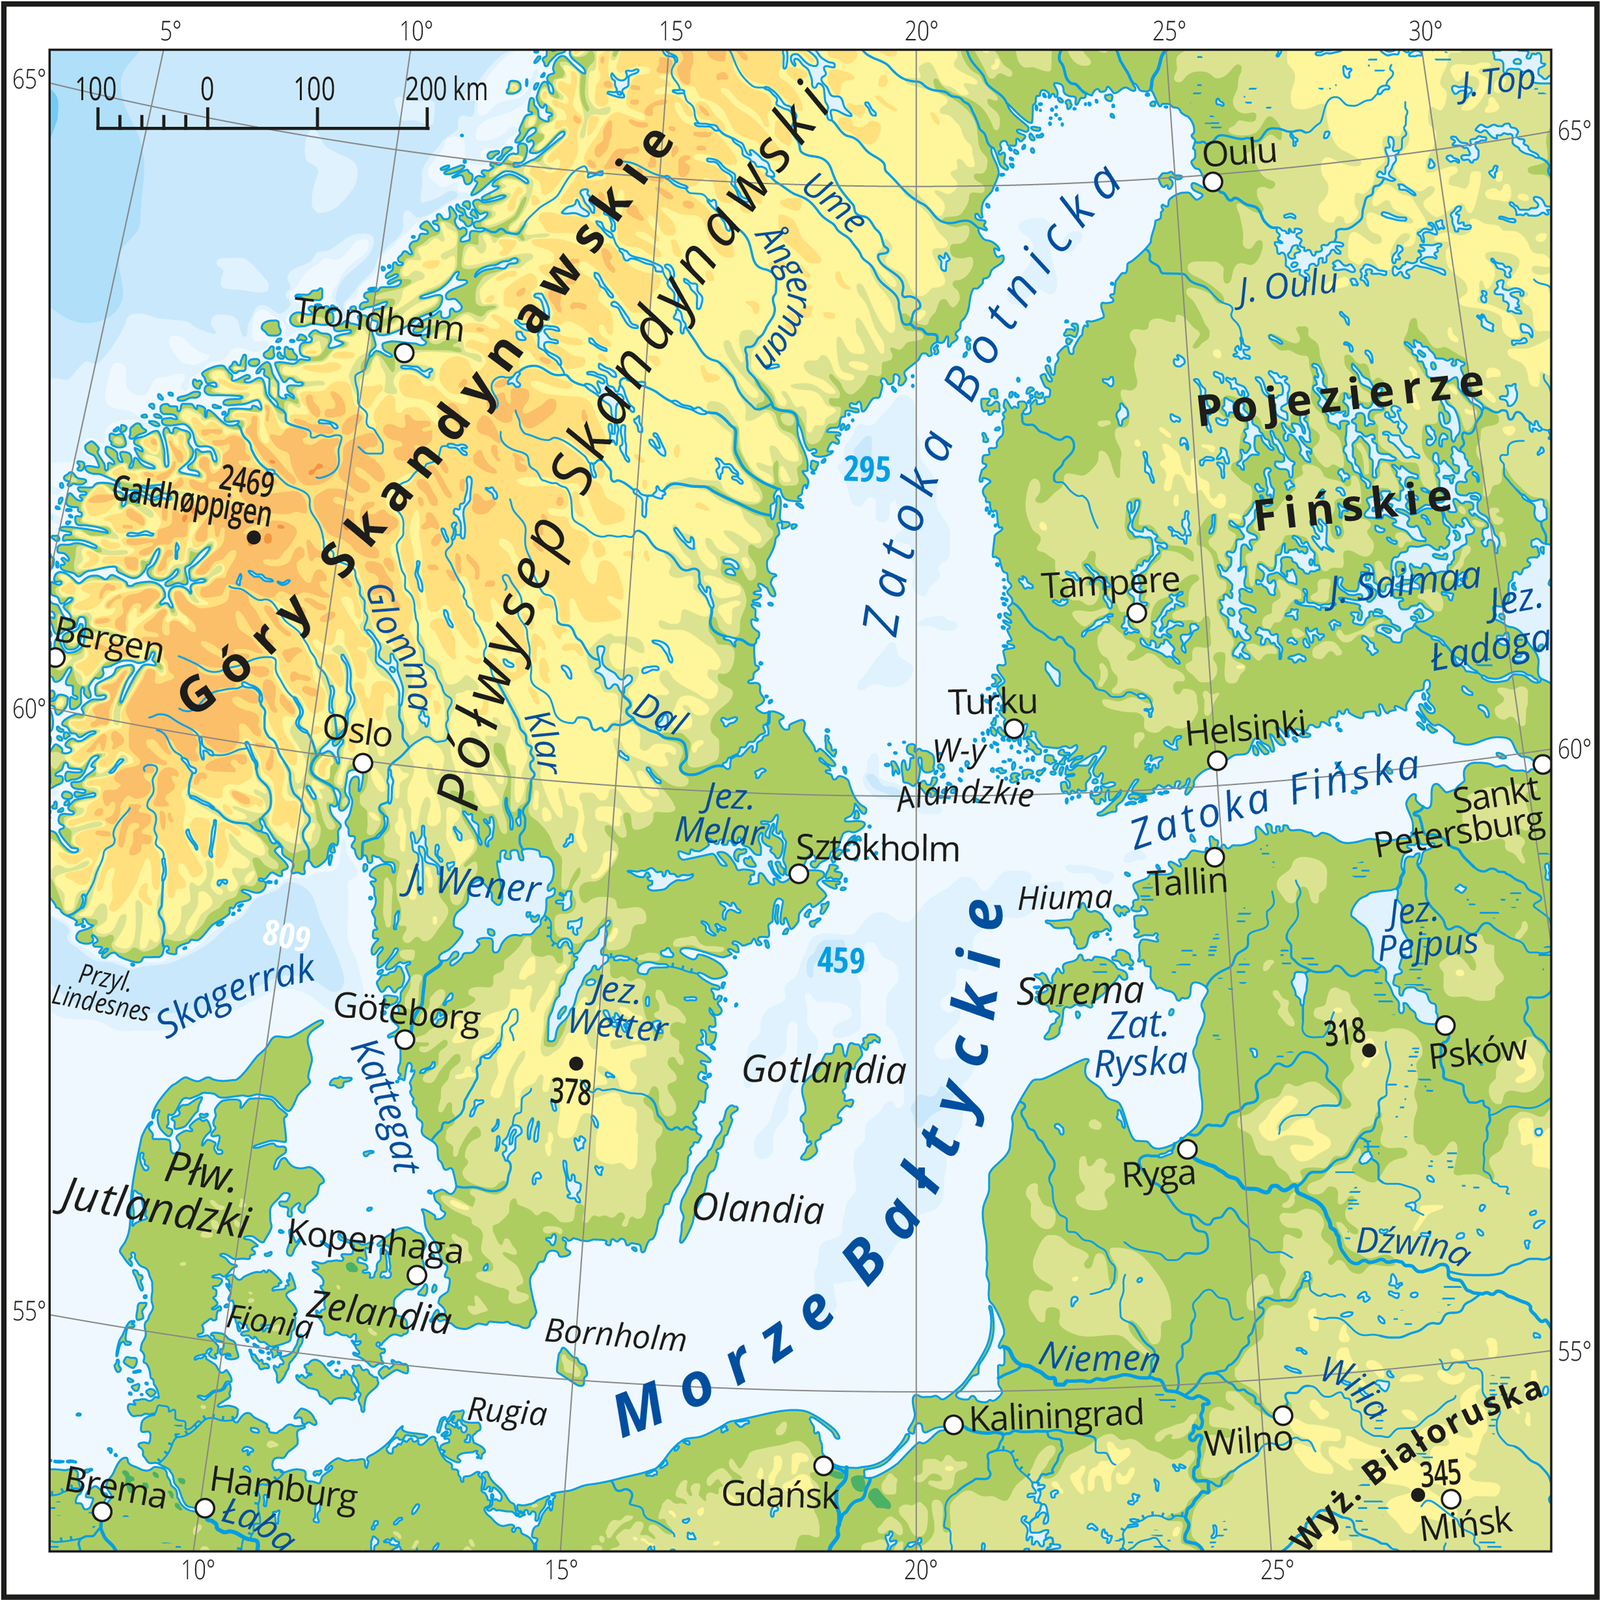 Ilustracja prezentuje mapę Morza Bałtyckiego i okalających go lądów. Mapa pokryta jest równoleżnikami i południkami. Dookoła mapy w białej ramce opisano współrzędne geograficzne co pięć stopni. Morze Bałtyckie jest niezbyt szerokie i wydłużone, rozciąga się od południowego zachodu w kierunku północy. Otoczone jest lądami od południa, wschodu i północy oraz częściowo od północnego zachodu. Na południowym zachodzie znajduje się kilka wąskich pasów wody pomiędzy lądami, nazywanych cieśninami, które łączą Morze Bałtyckie z Morzem Północnym. Bałtyk posiada kilka zatok, czyli wód otoczonych z trzech stron lądami. Największa to Zatoka Botnicka na północy. Wody Bałtyku są stosunkowo płytkie i oznaczone w dwóch odcieniach niebieskiego: jasnoniebieskim i niebieskim. Na Bałtyku znajdują się liczne mniejsze i większe wyspy, np. Gotlandia, Zelandia. Tereny lądowe są pokryte głównie obszarami nizinnymi w kolorach: ciemnozielonym, zielonym, żółtym oraz rzekami i jeziorami w kolorze niebieskim. Jedynie po stronie północno-zachodniej mapy na Półwyspie Skandynawskim oznaczono kolorem jasnobrązowym Góry Skandynawskie.